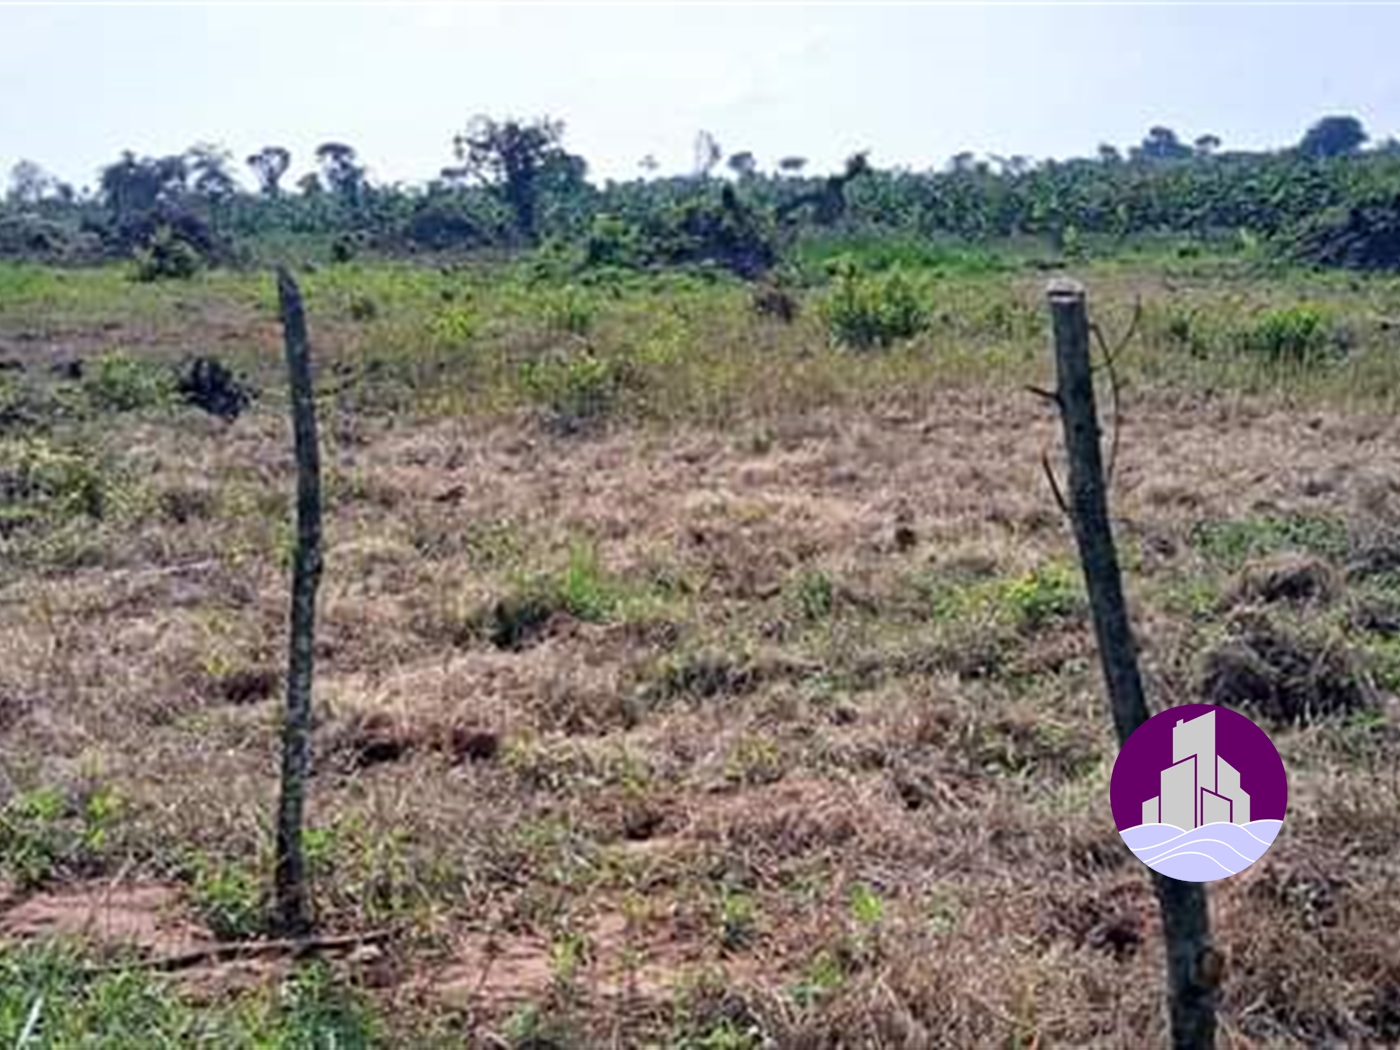 Agricultural Land for sale in Ziloobwe Nakaseke